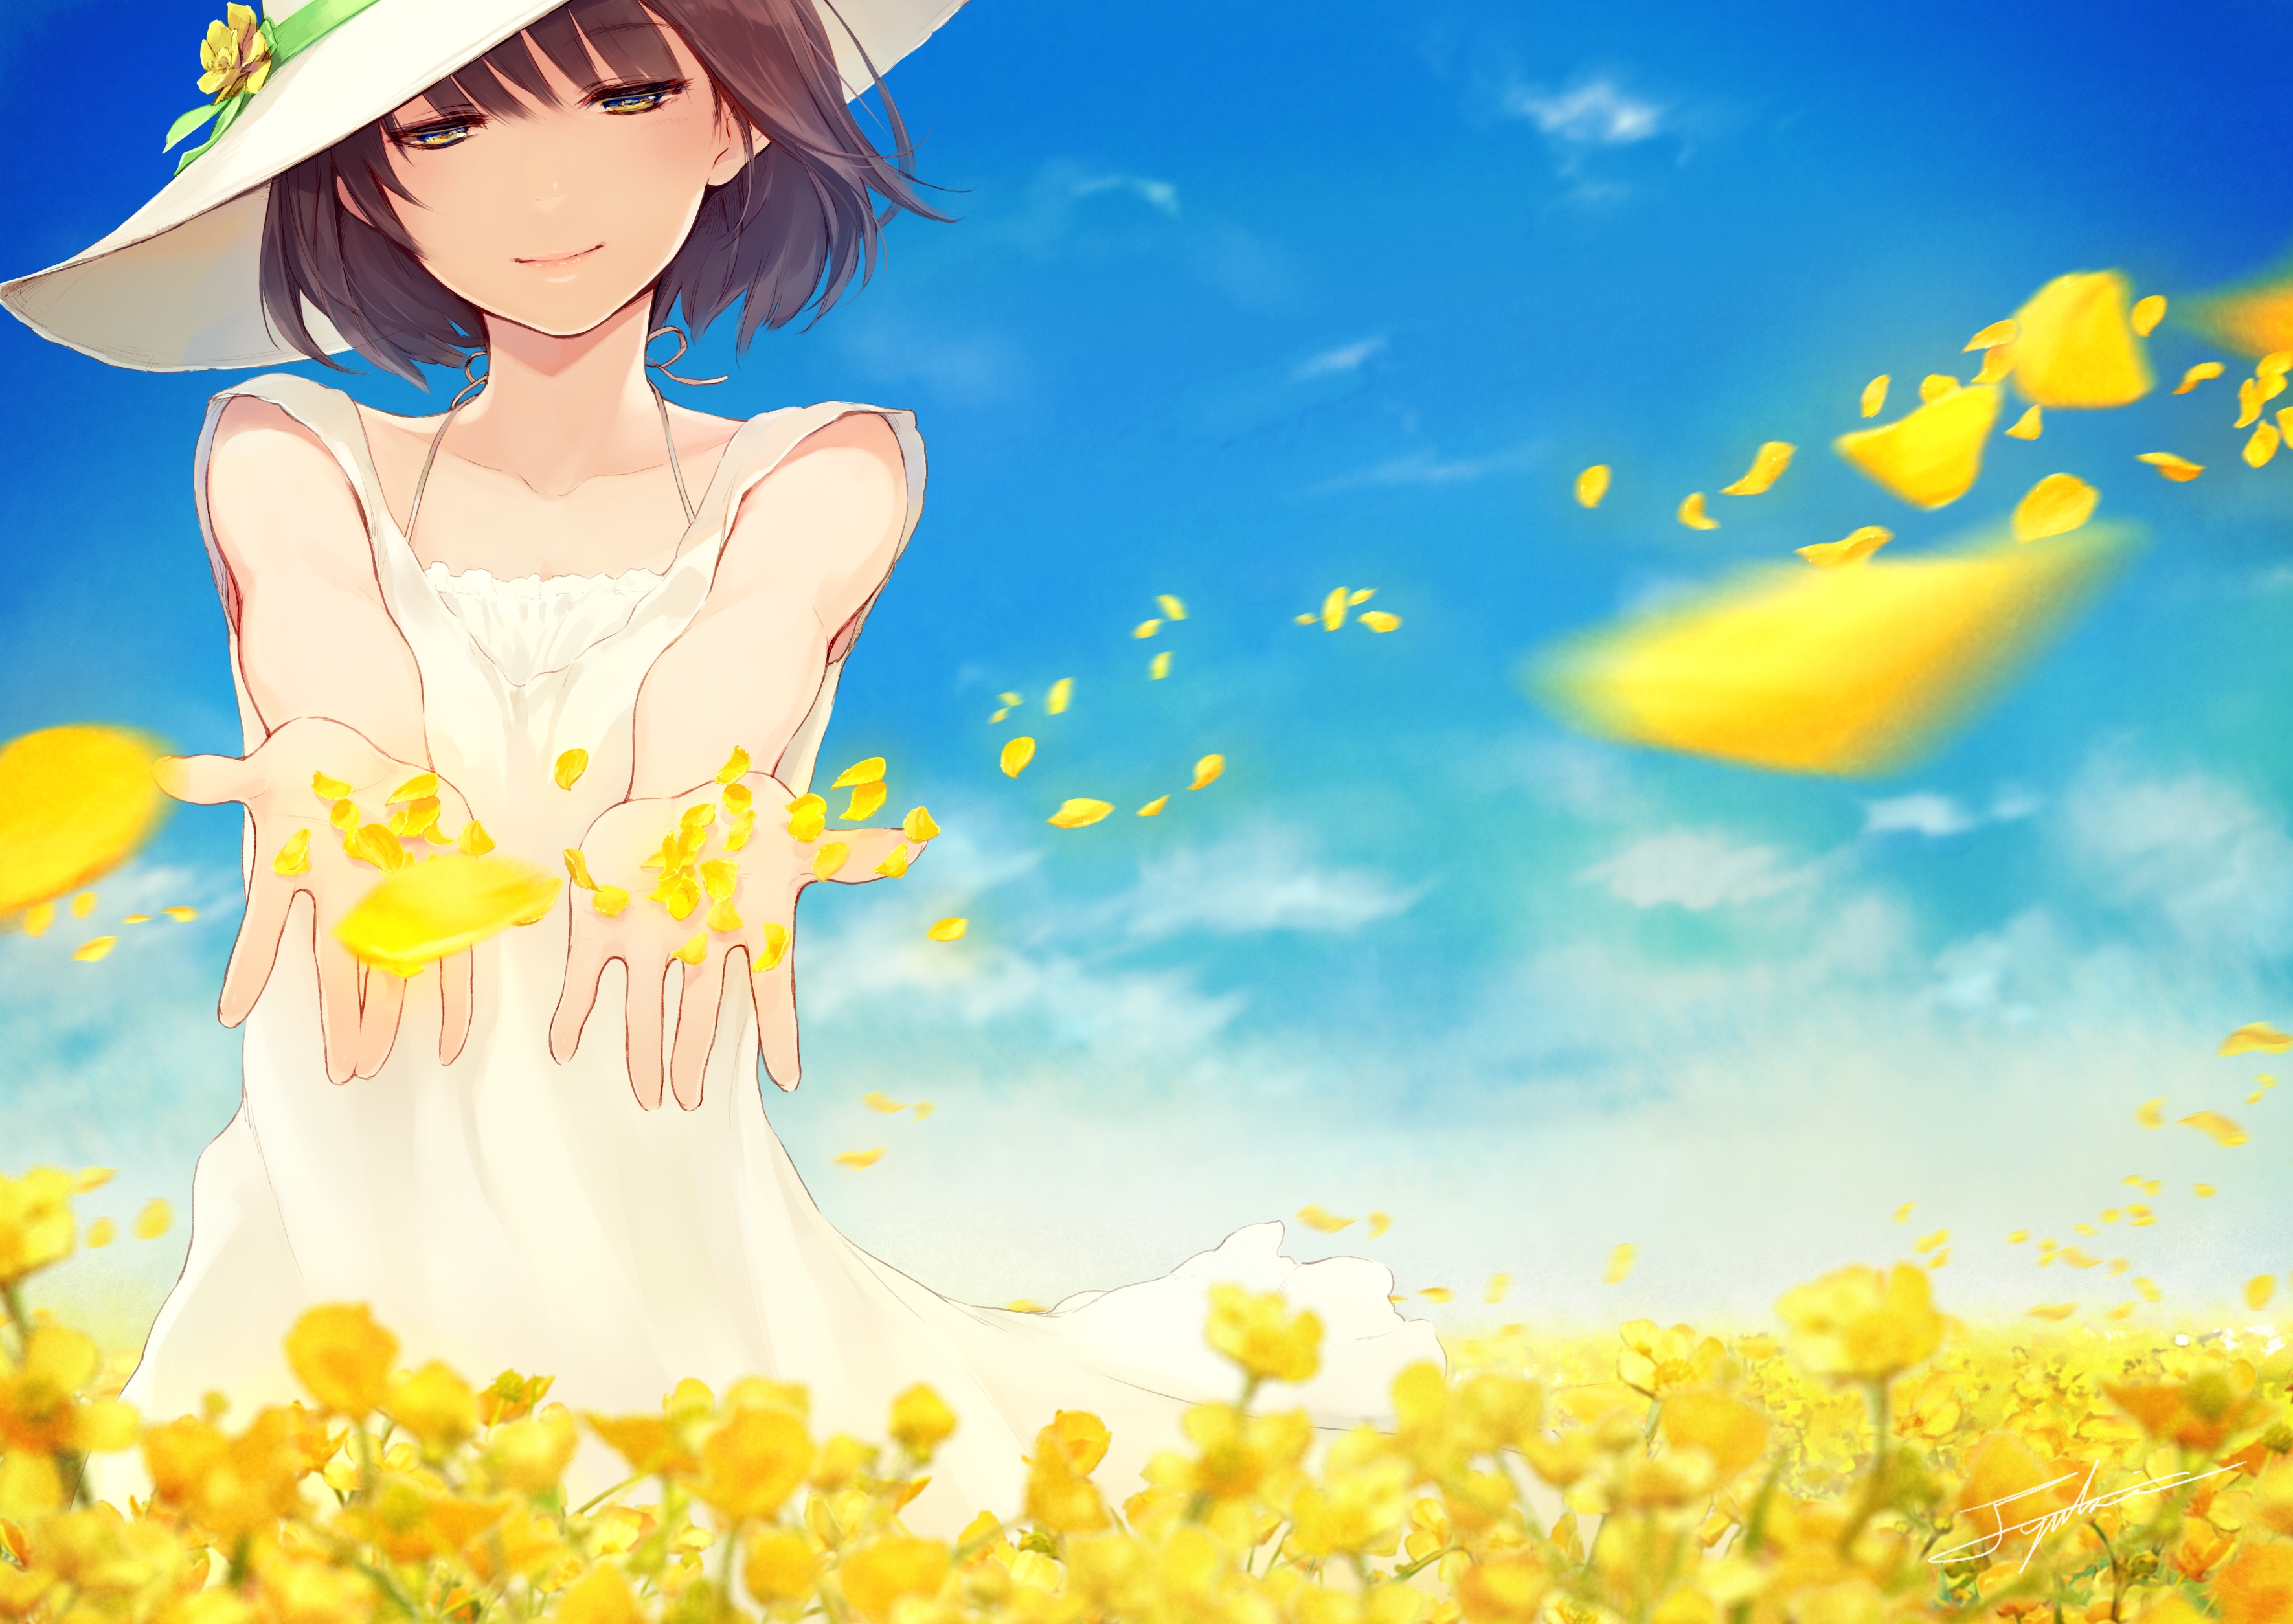 Download 2560x1440 Anime Girl, Summer, Light Dress Wallpaper for iMac 27 inch